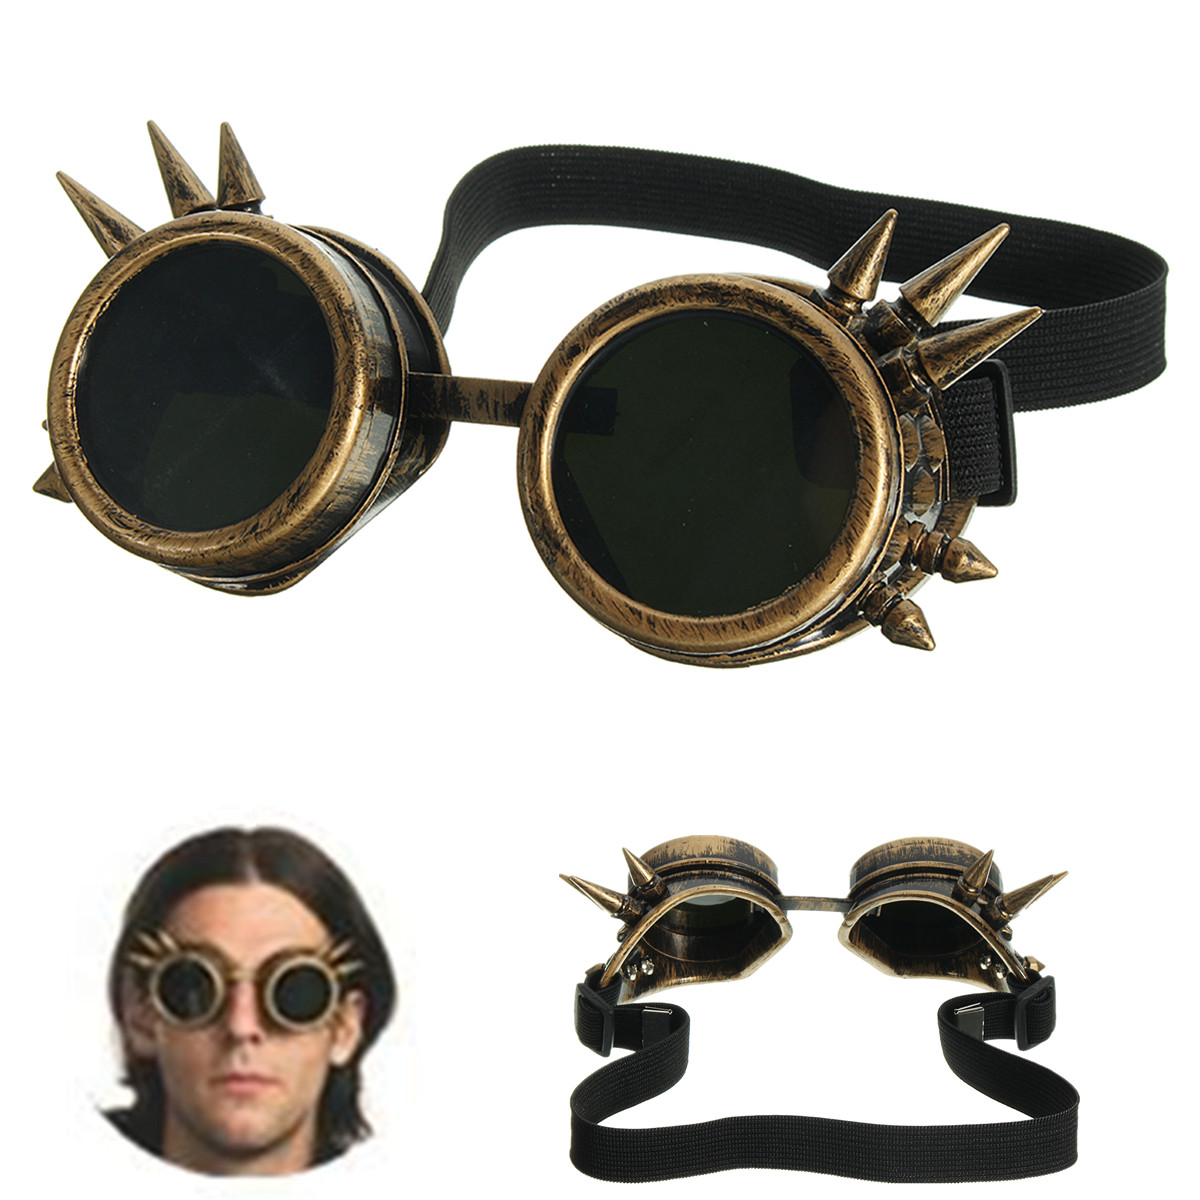 

Мужчины Винтаж викторианской готики косплей заклепки стимпанк очки Очки хиппи солнцезащитные очки